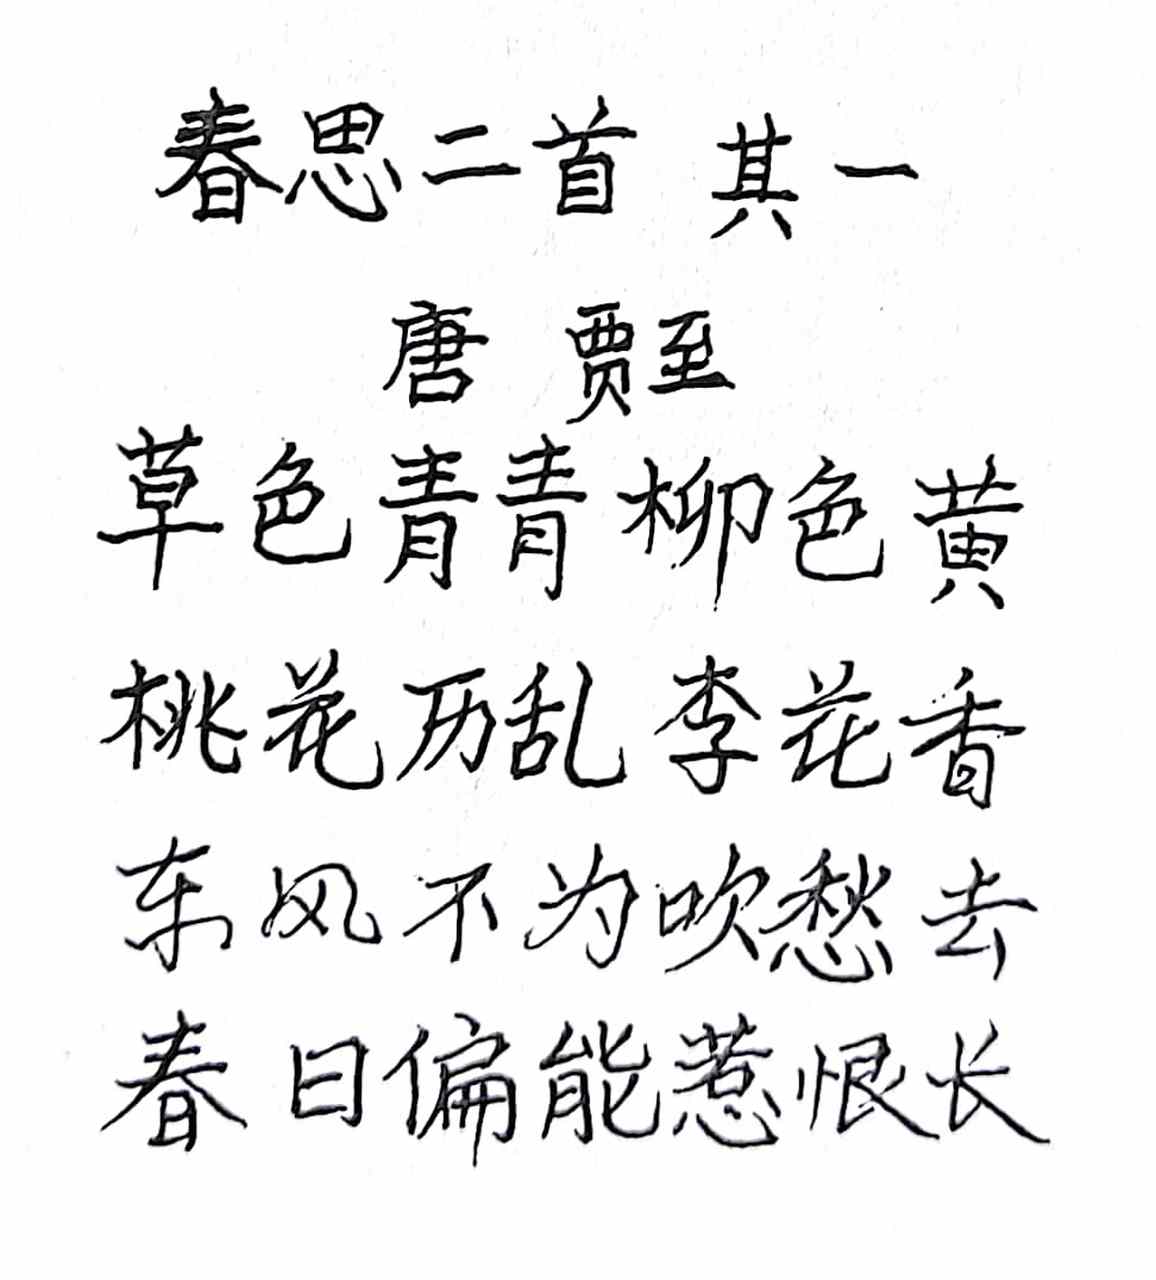 抄写唐代诗人贾至的诗《春思二首·其一》: 草色青青柳色黄, 仄仄平